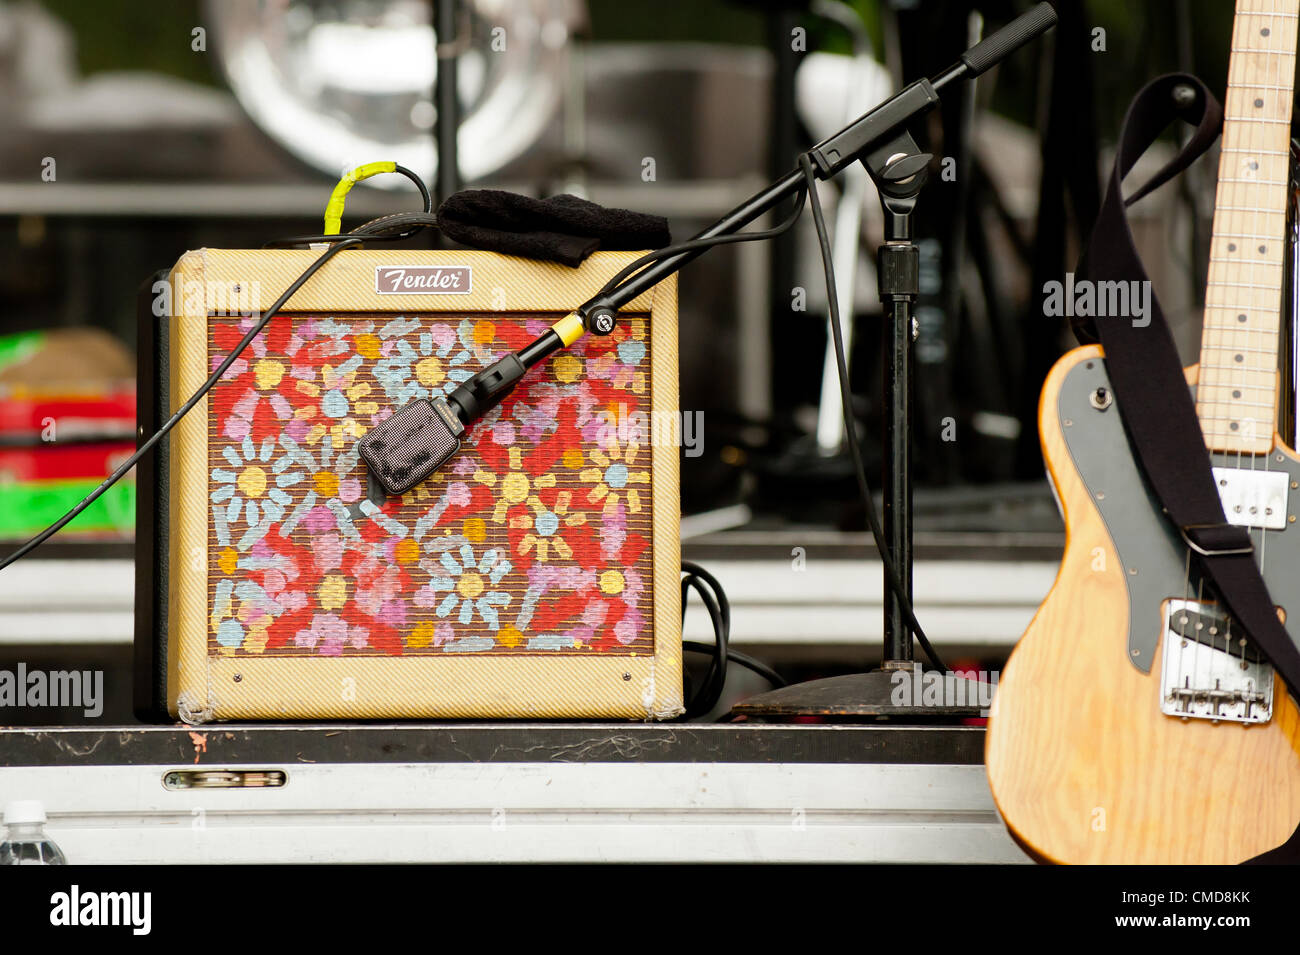 Instrumentos / Altavoces / amplificadores y equipamiento del alt rock indie  rock indy rock band | Grouplove realizada en el exterior en verano original  Firefly Festival de Música Alternativa en 2012 por